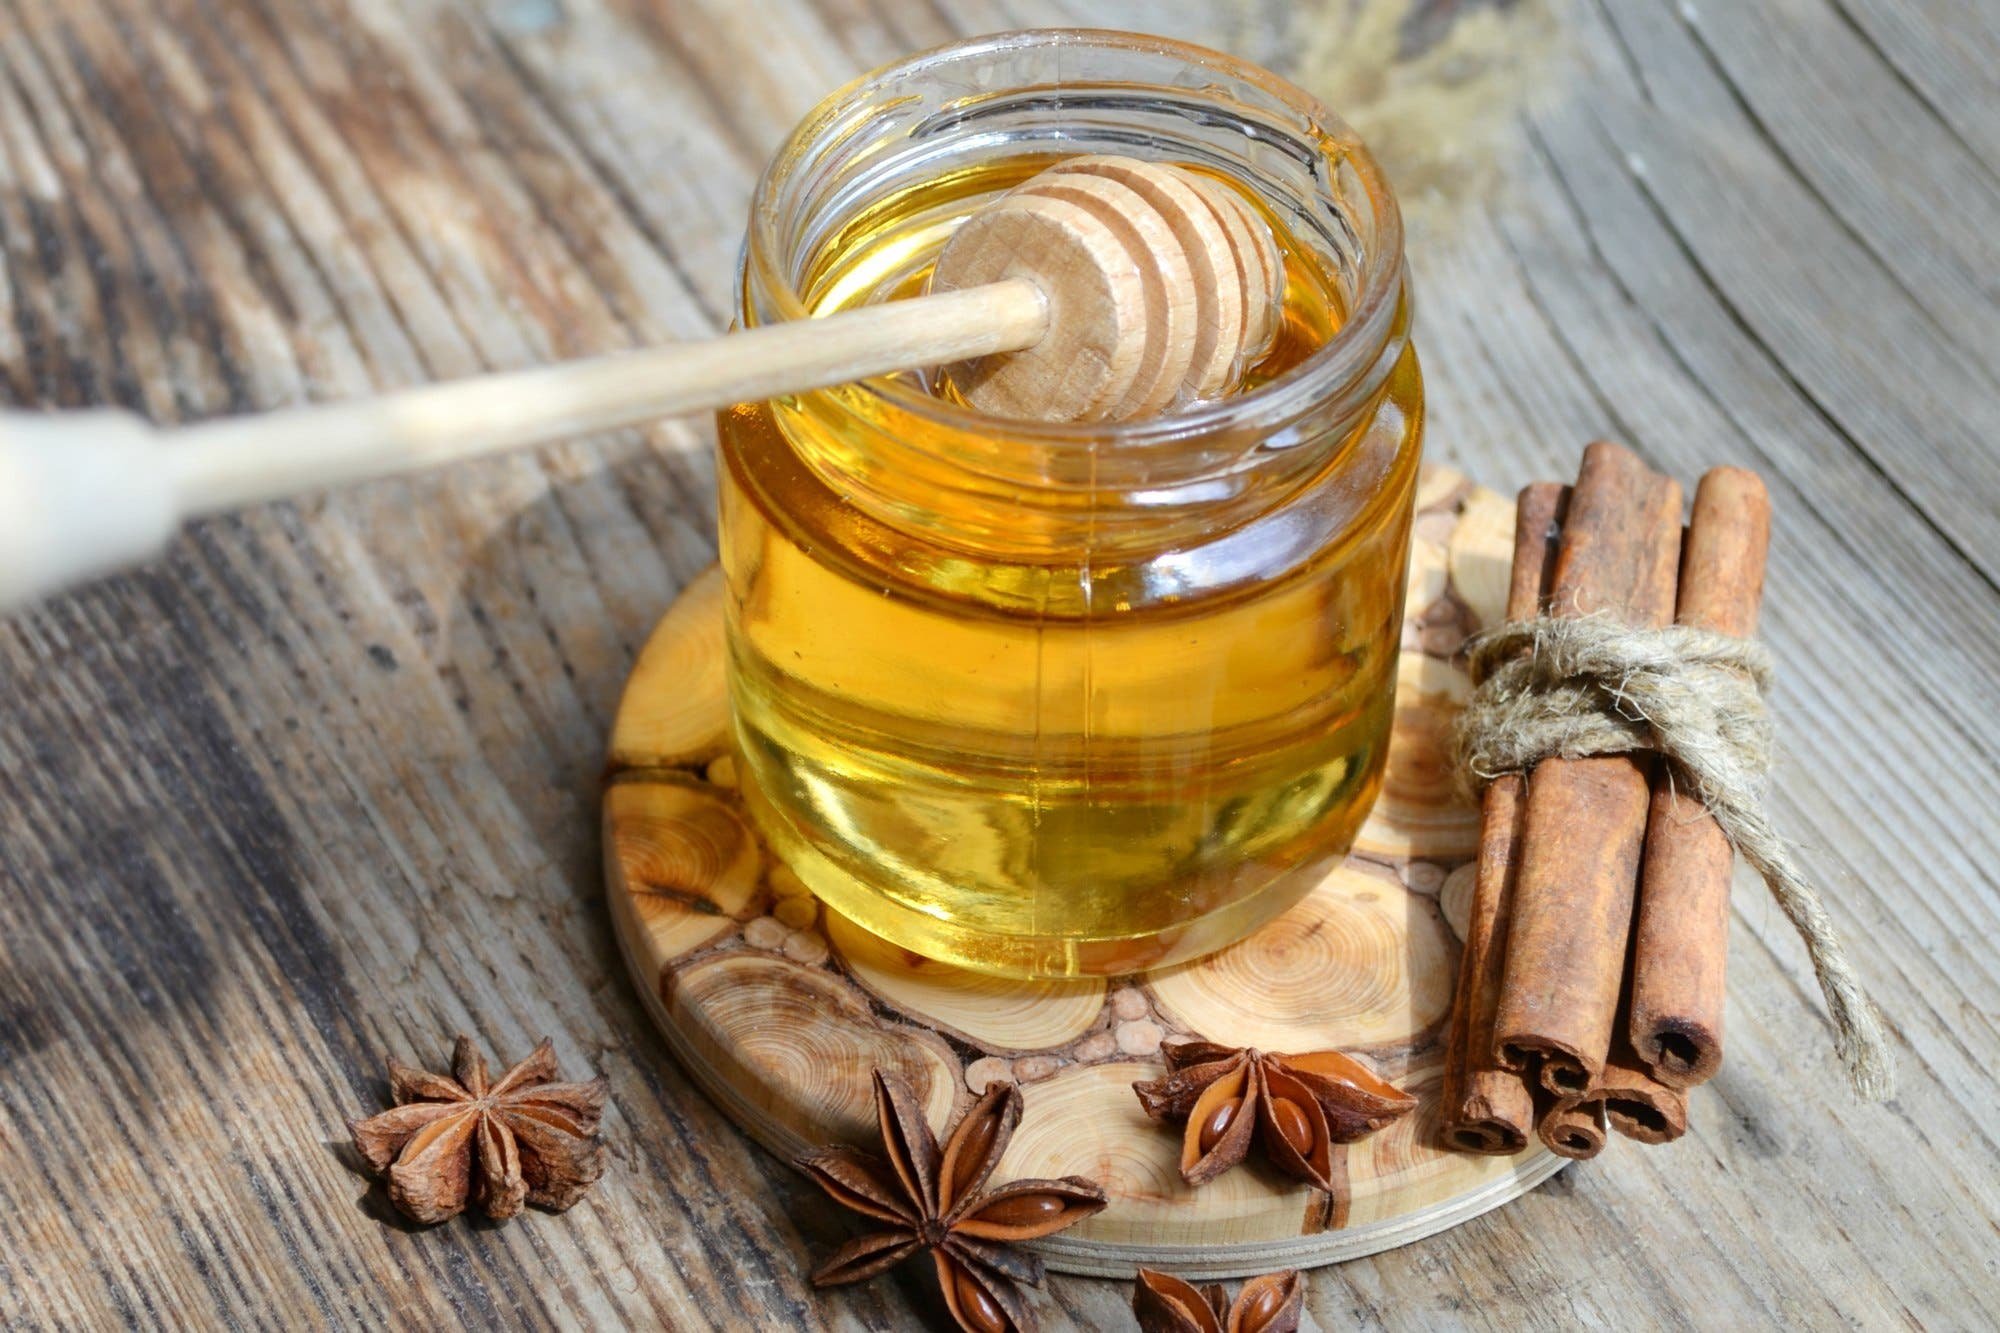 للقلب والجلد والهرمونات.. دراسة تكشف فوائد ذهبية لتناول القرفة مع العسل